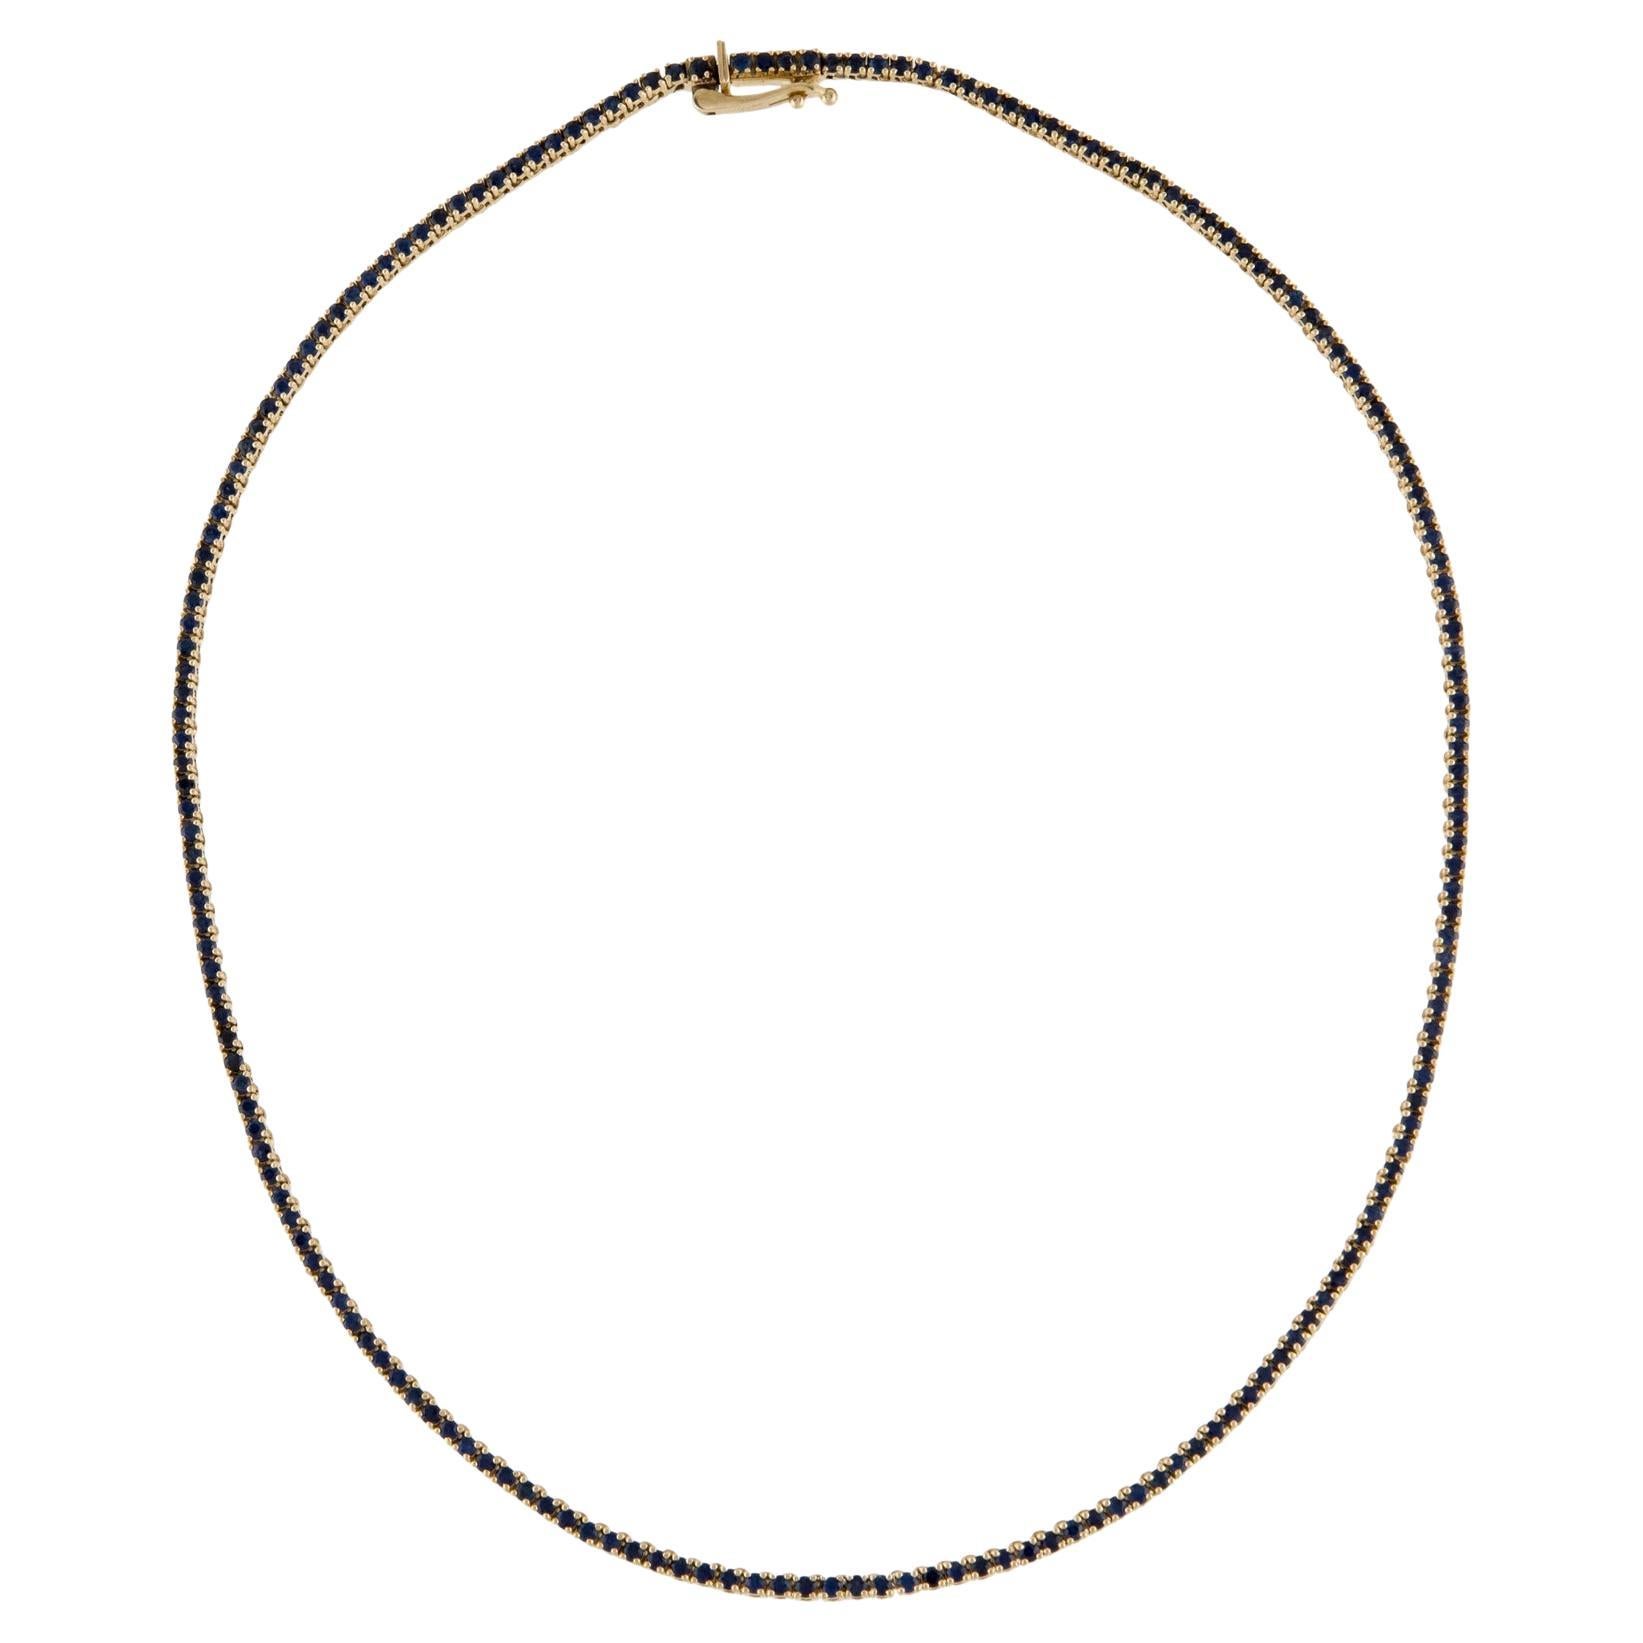 14K 6.47ctw Sapphire Collar Necklace - Exquisite Gemstone Statement Piece